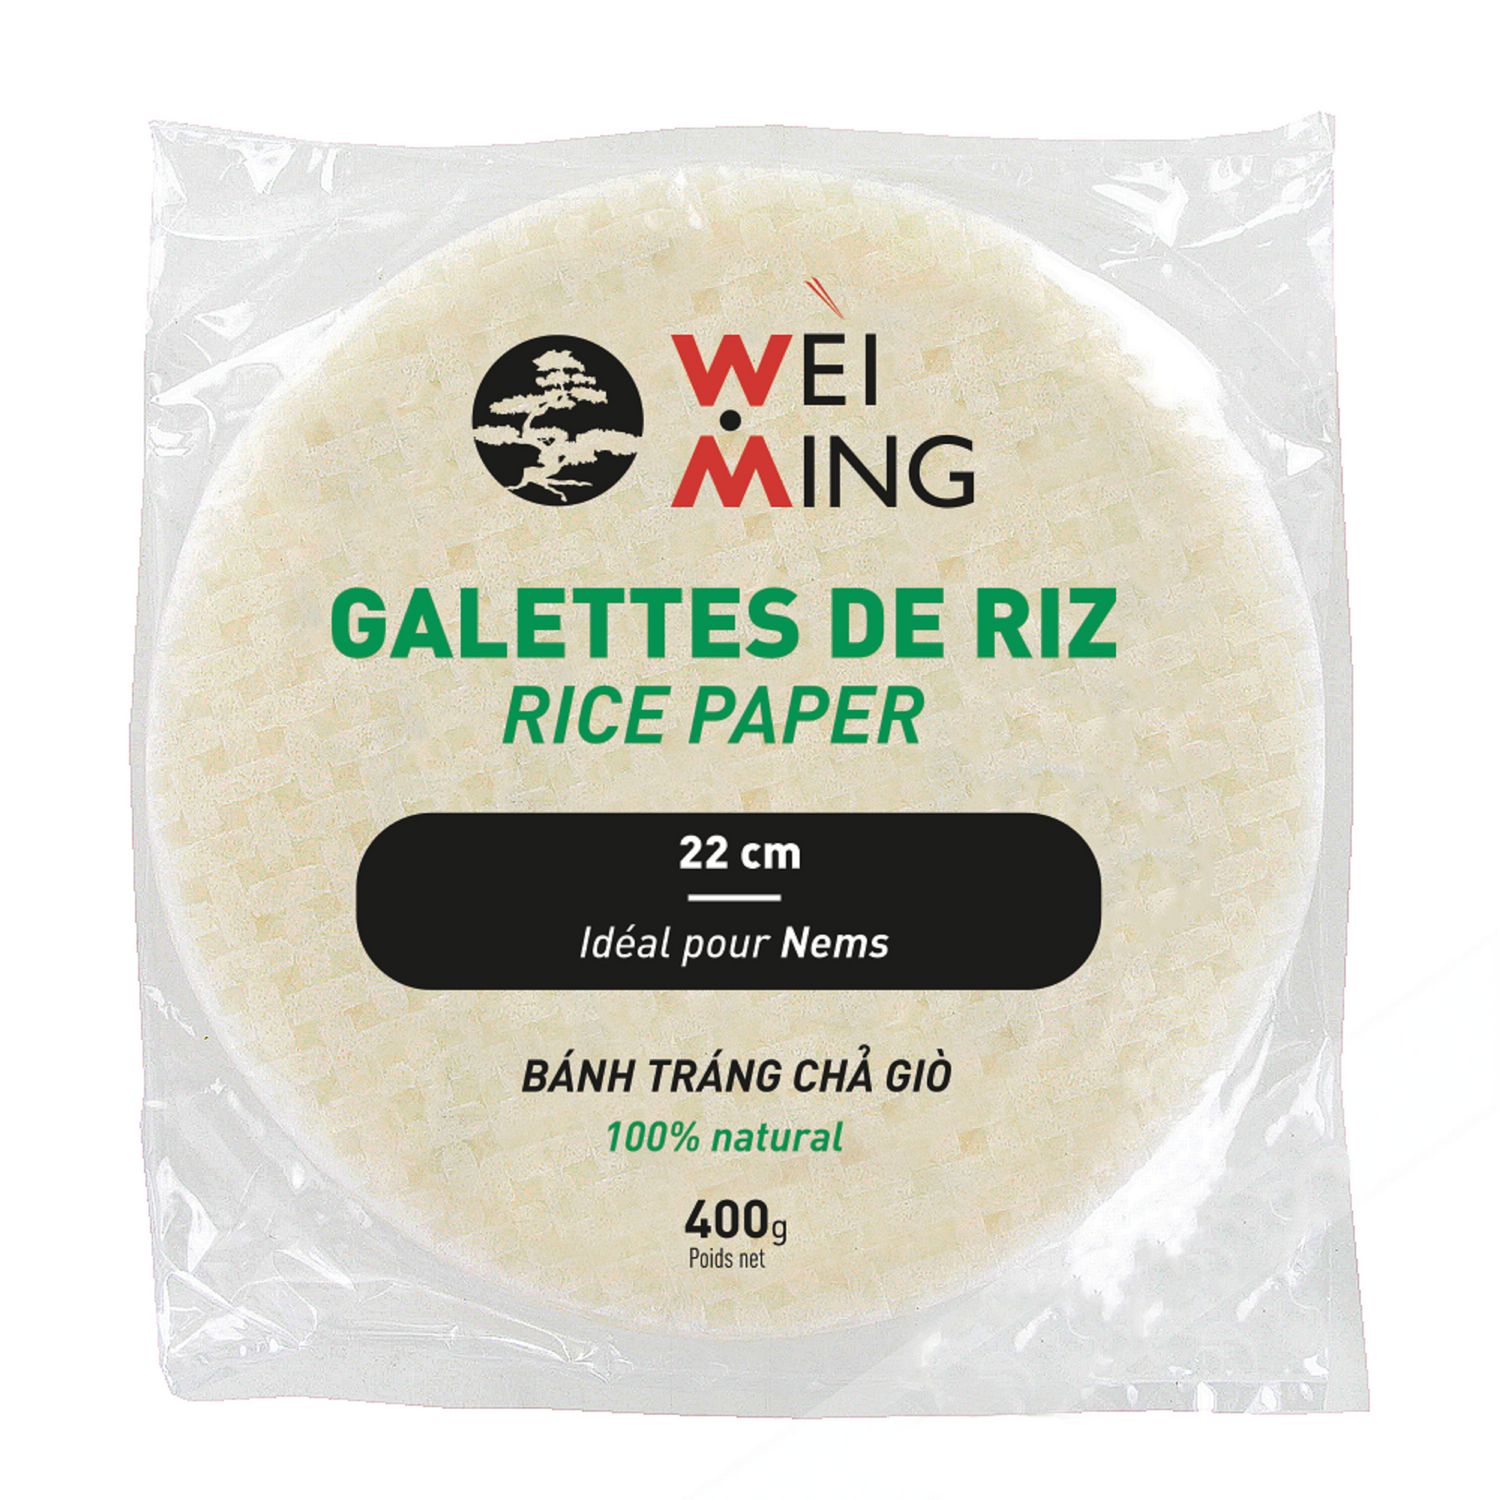 WEI MING Galettes de riz 22cm 400g pas cher 